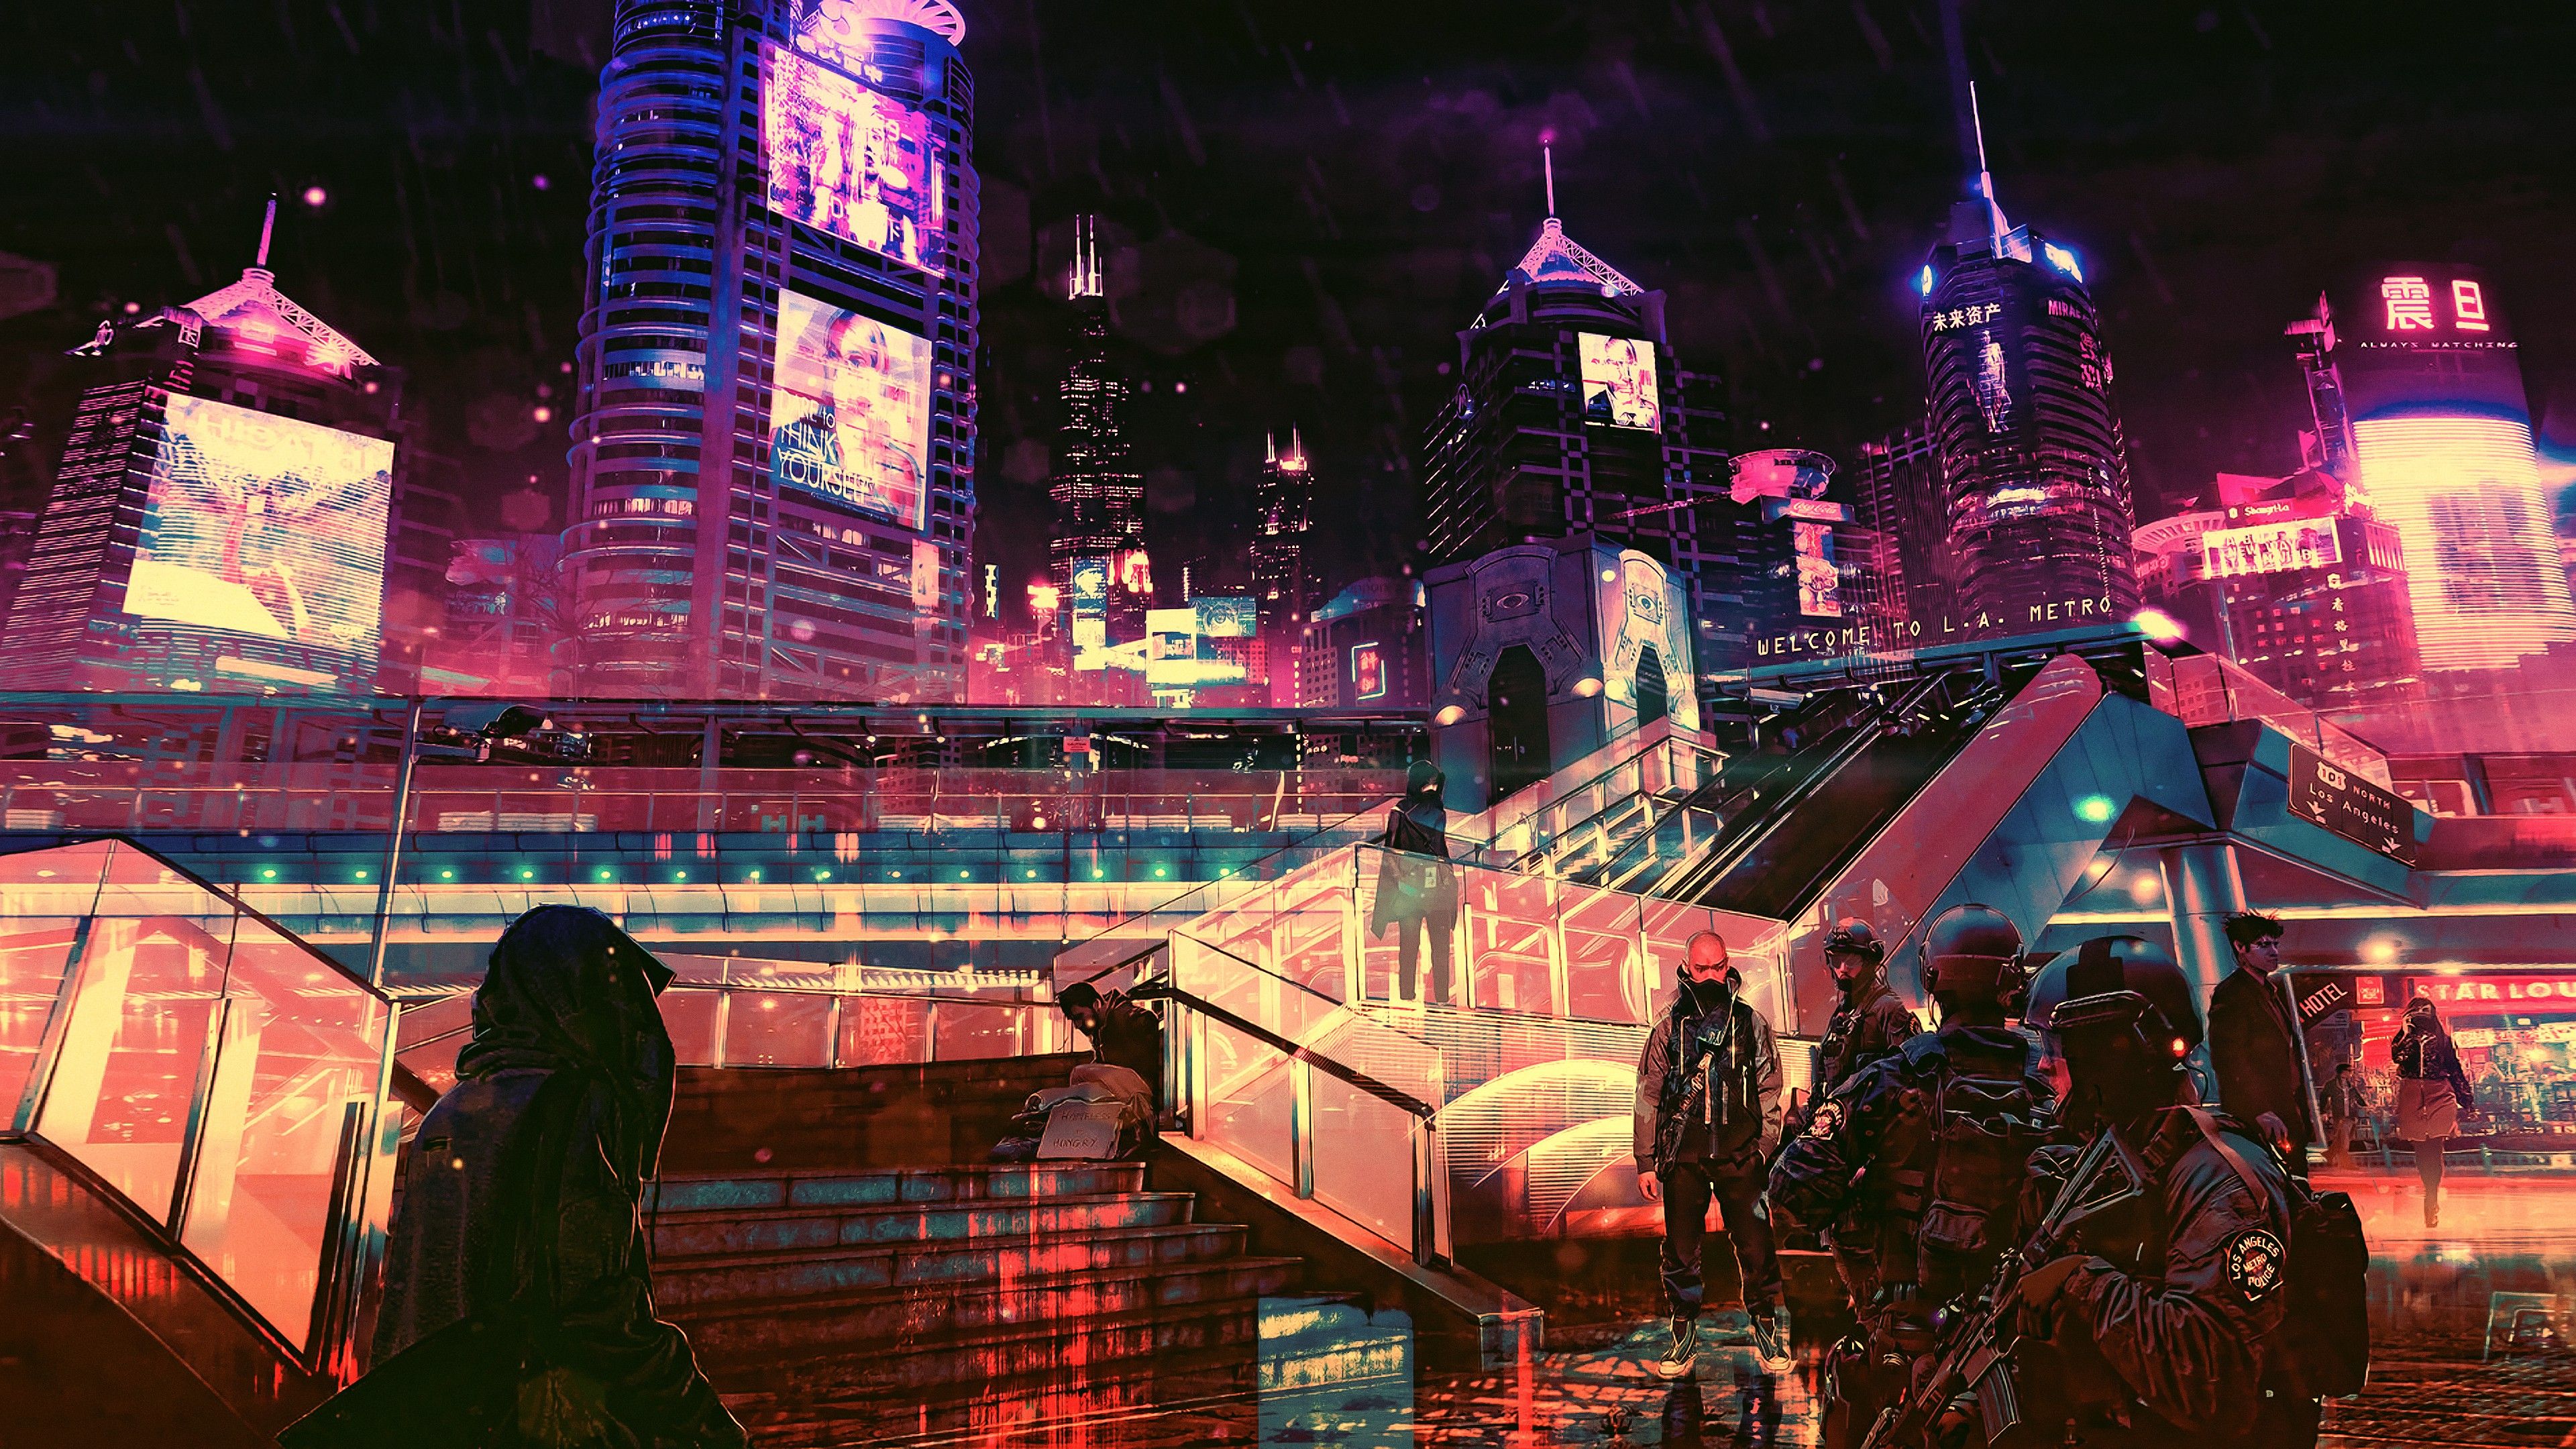 futuristic cyberpunk future world 4K. Samsung wallpaper, Sci fi wallpaper, Cyberpunk